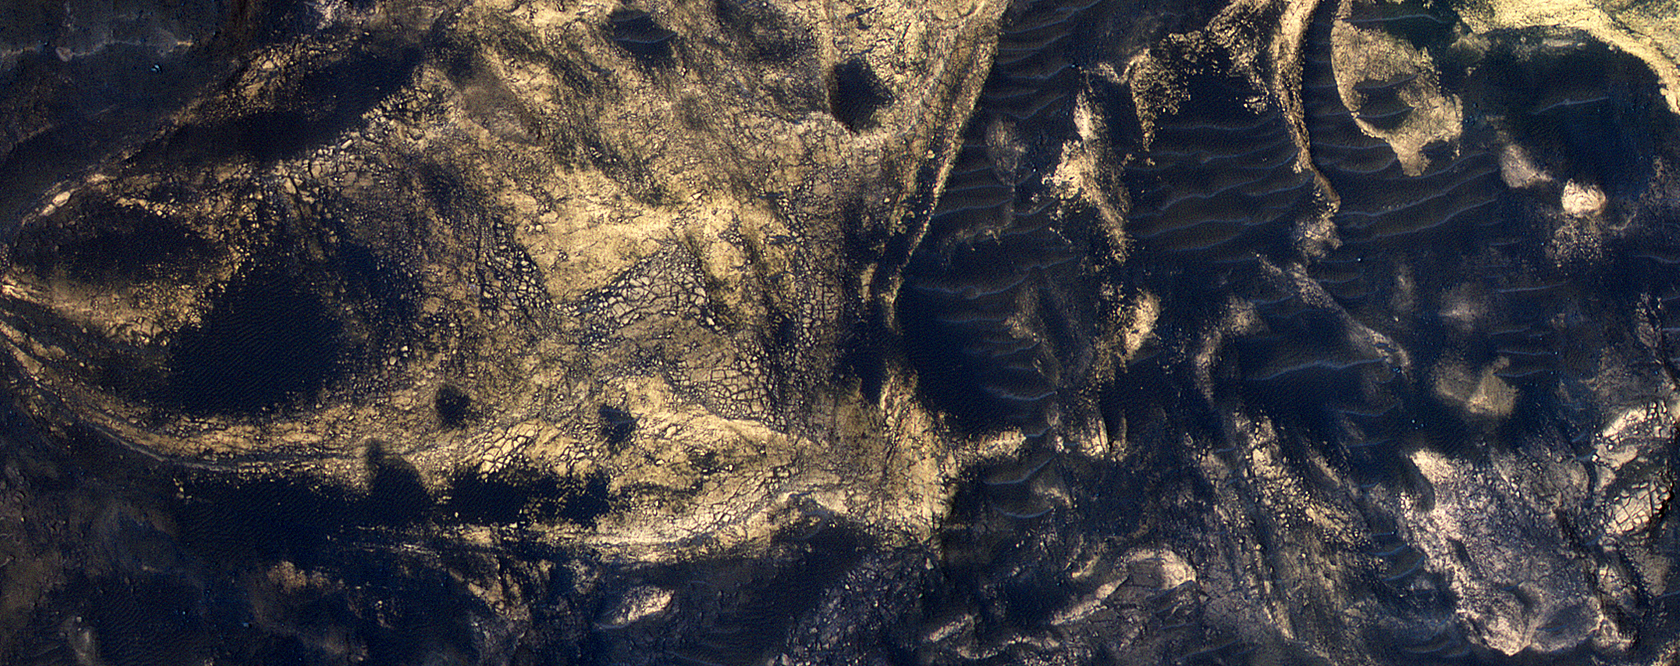 Bloques mezclados en el suelo de Melas Chasma